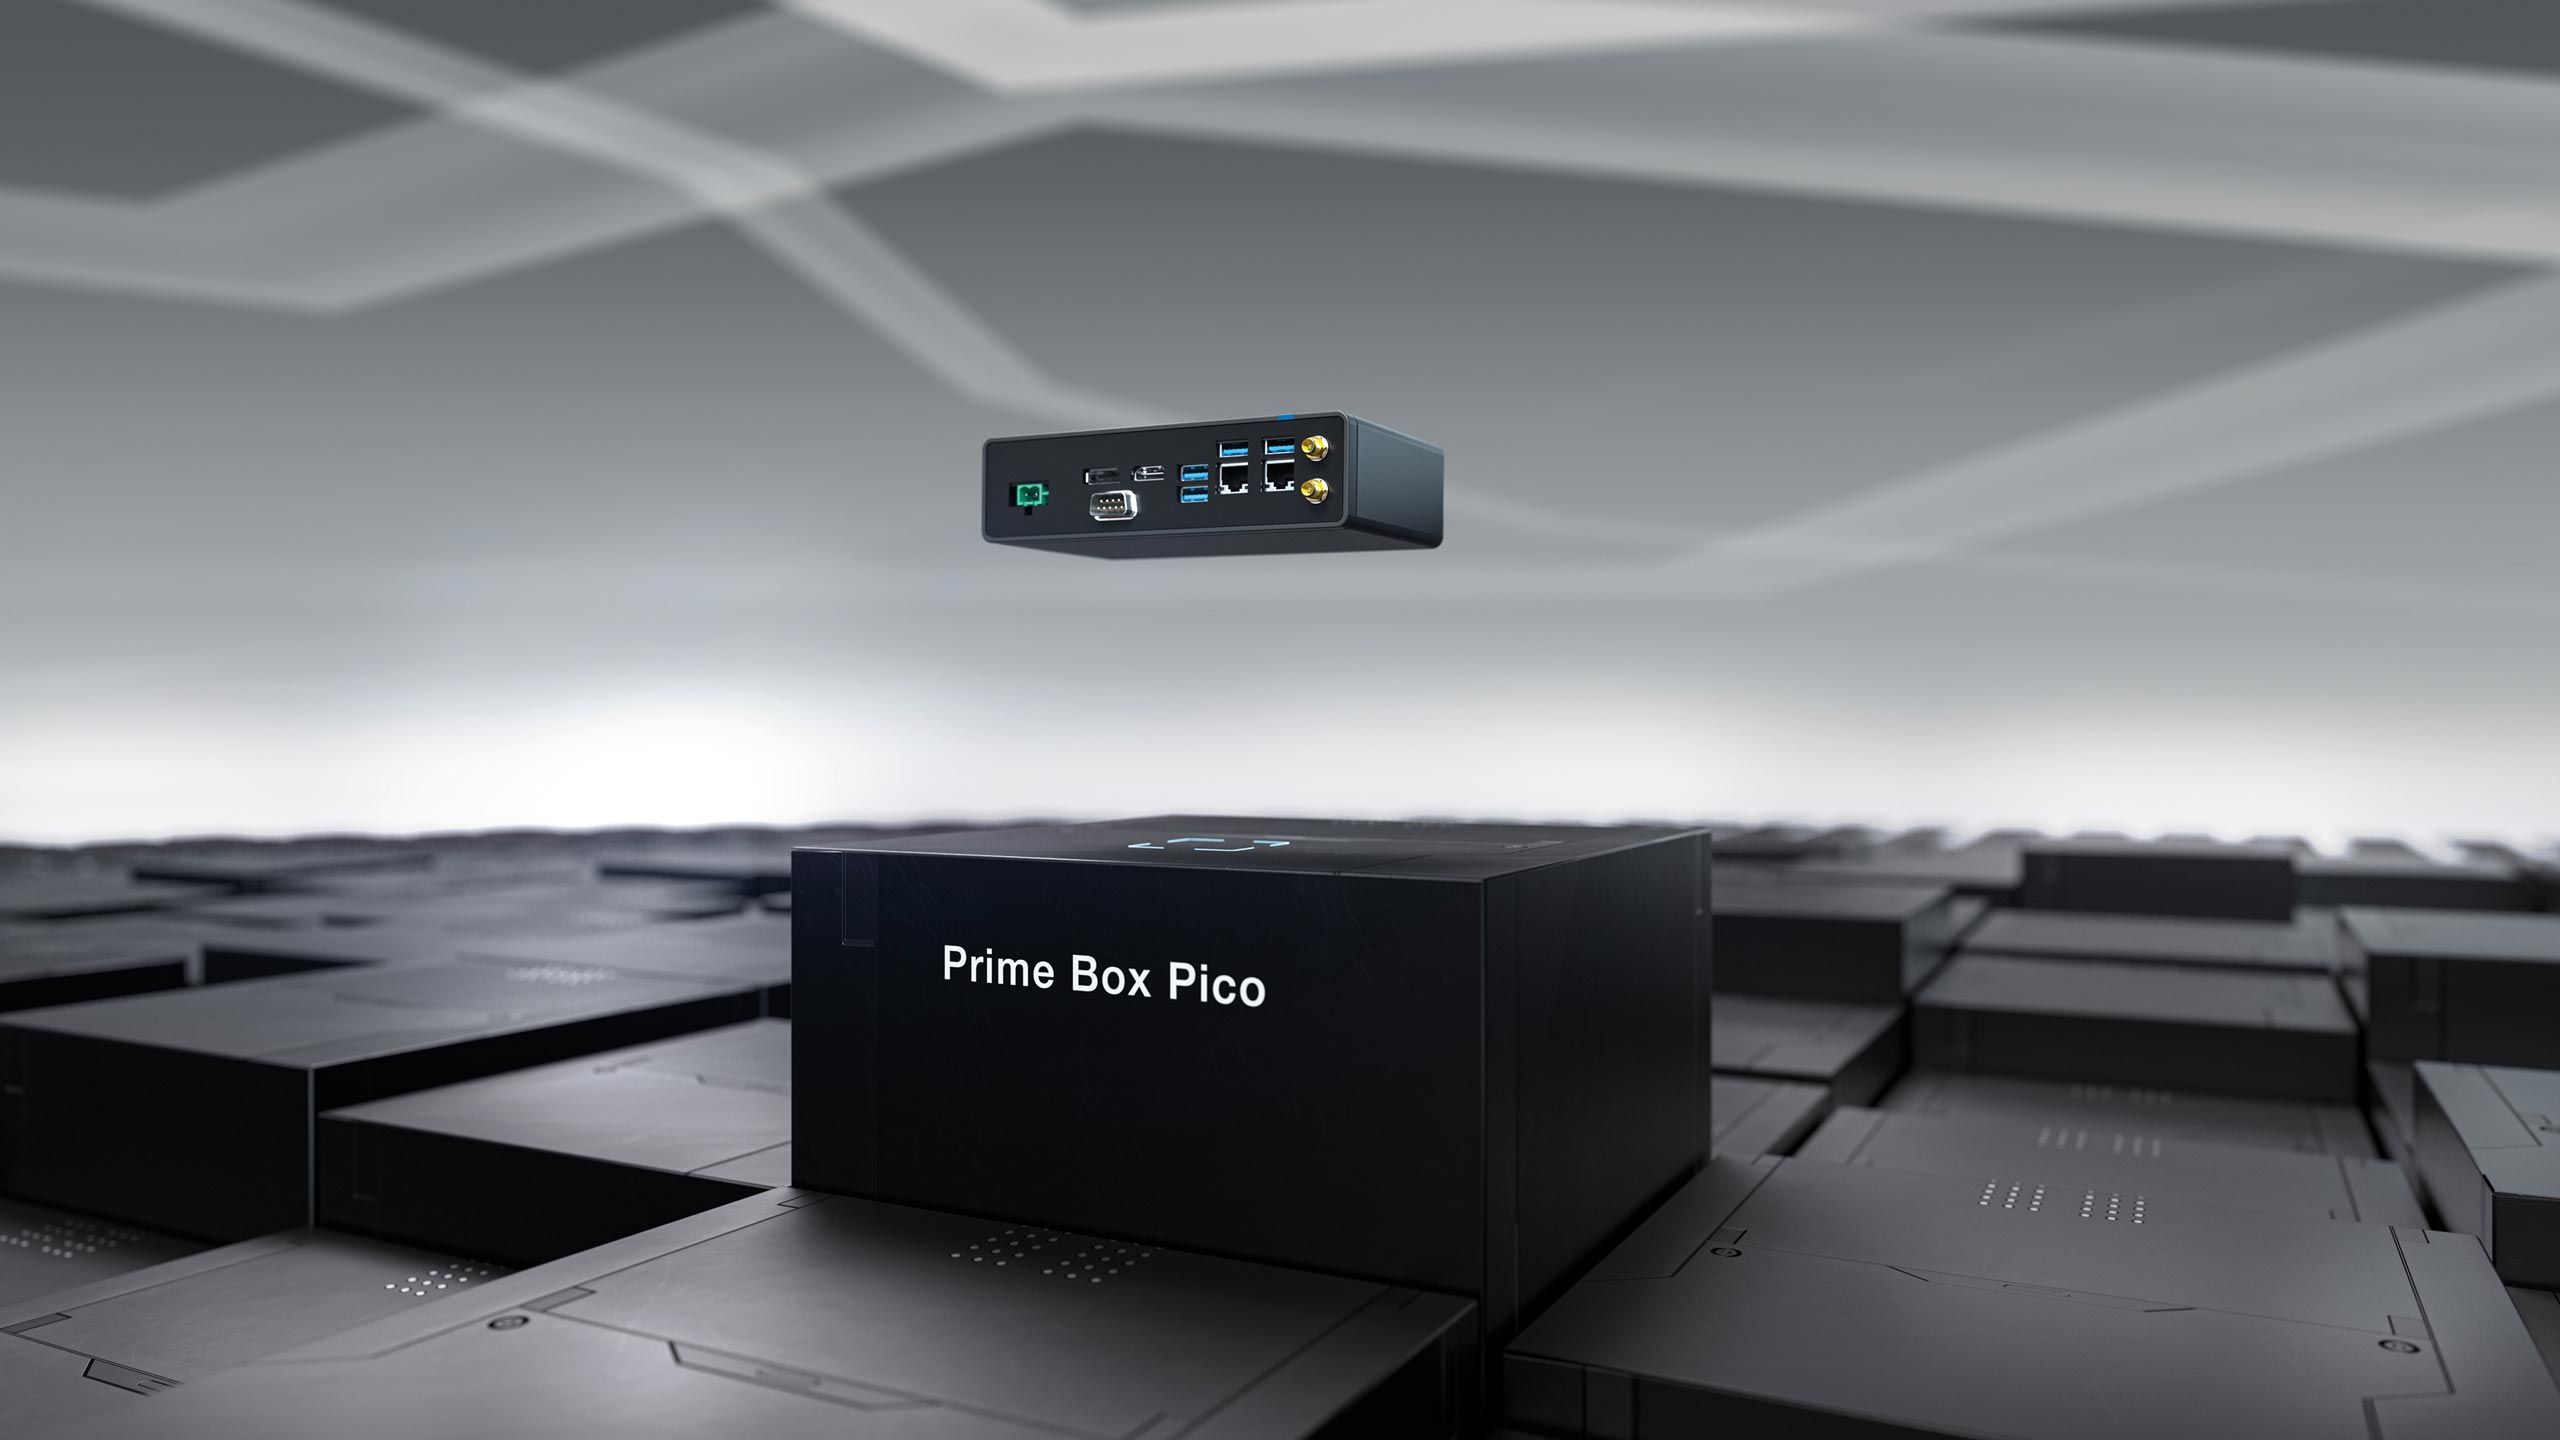 Zu sehen ist die Prime Box Pico auf einemdunkelgrauen Sockel. Die Prime Box Pico ist einer der kleinsten Box-PCs im industriellen Umfeld